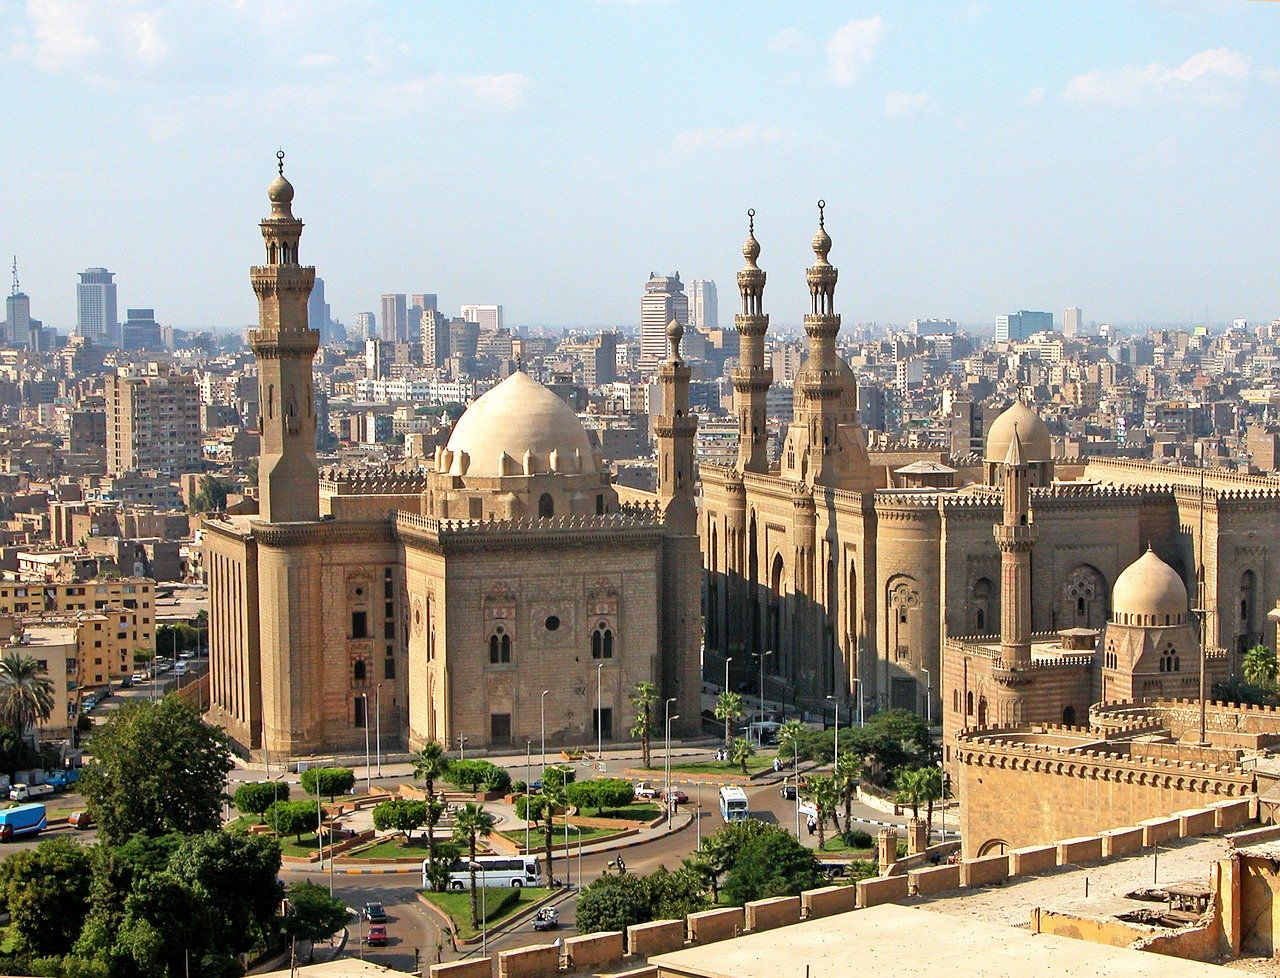 La mosquée-université Al-Azhar au Caire (c) Pixabay